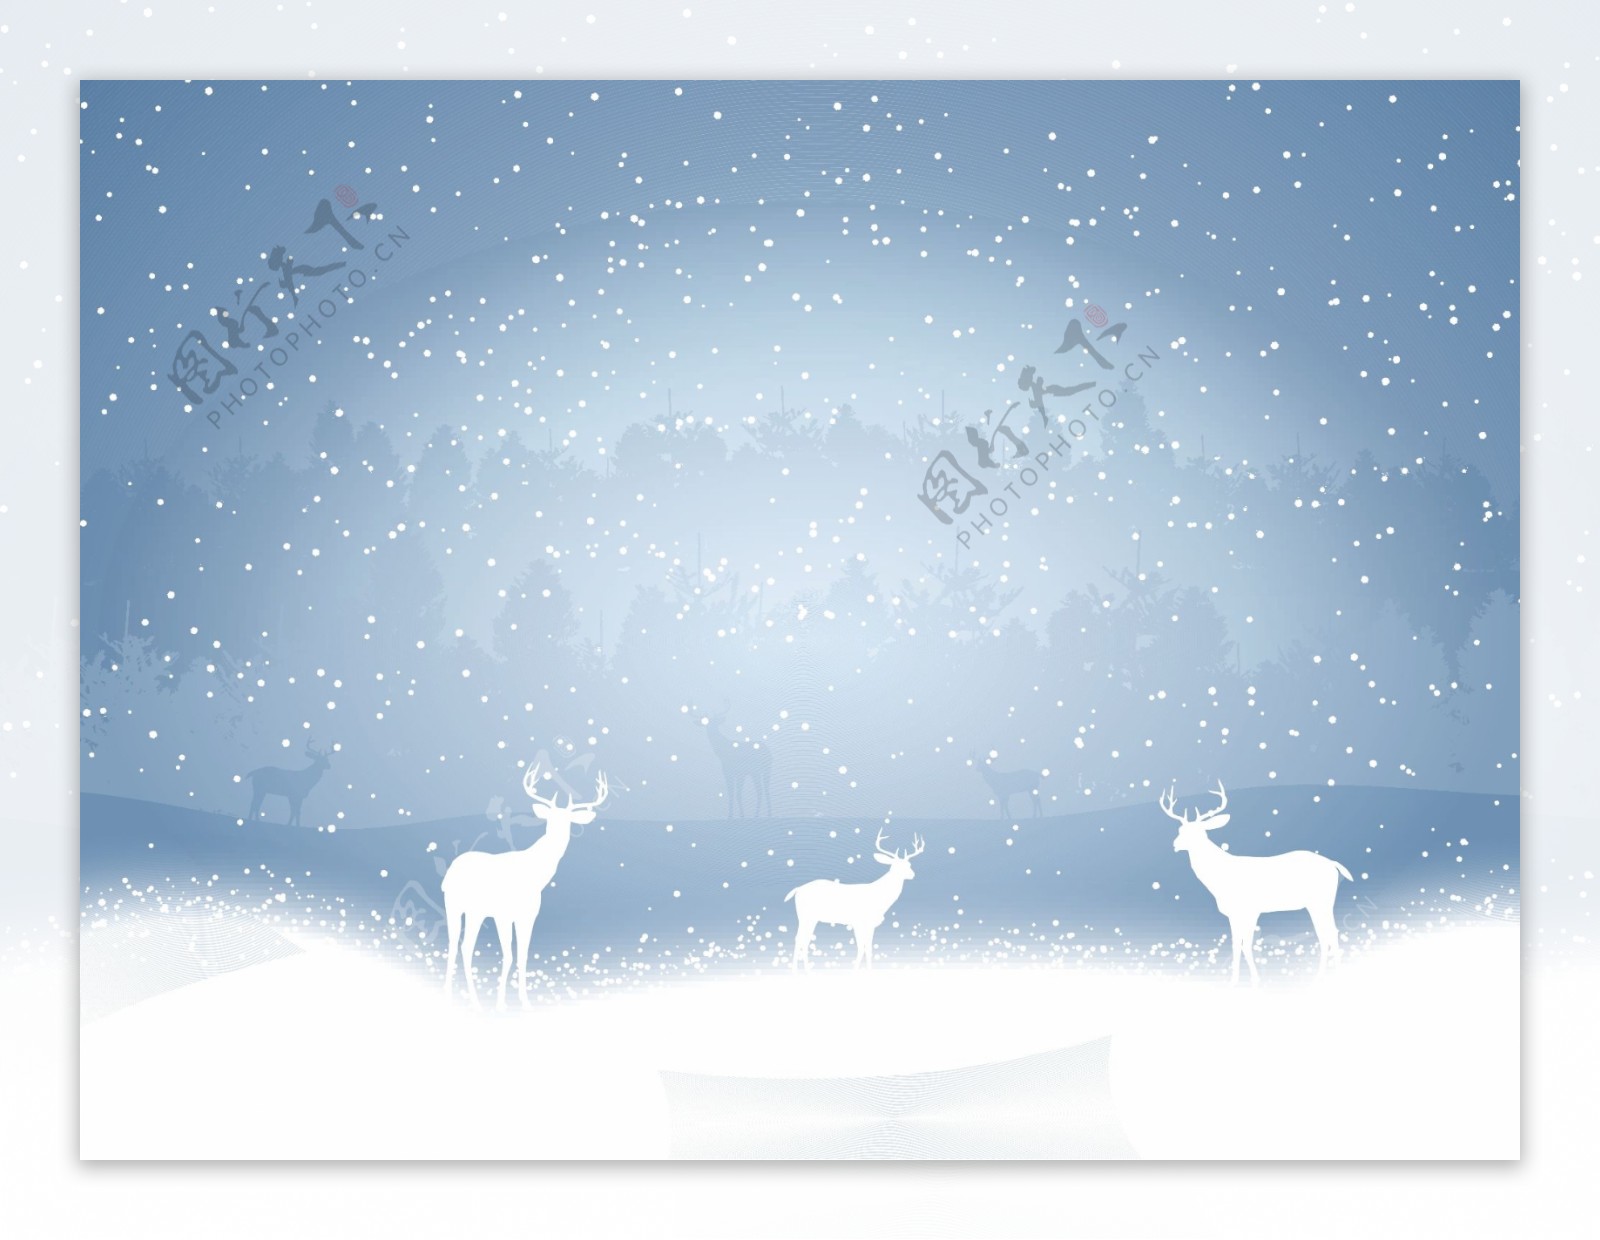 雪地上的蓝色背景的驯鹿